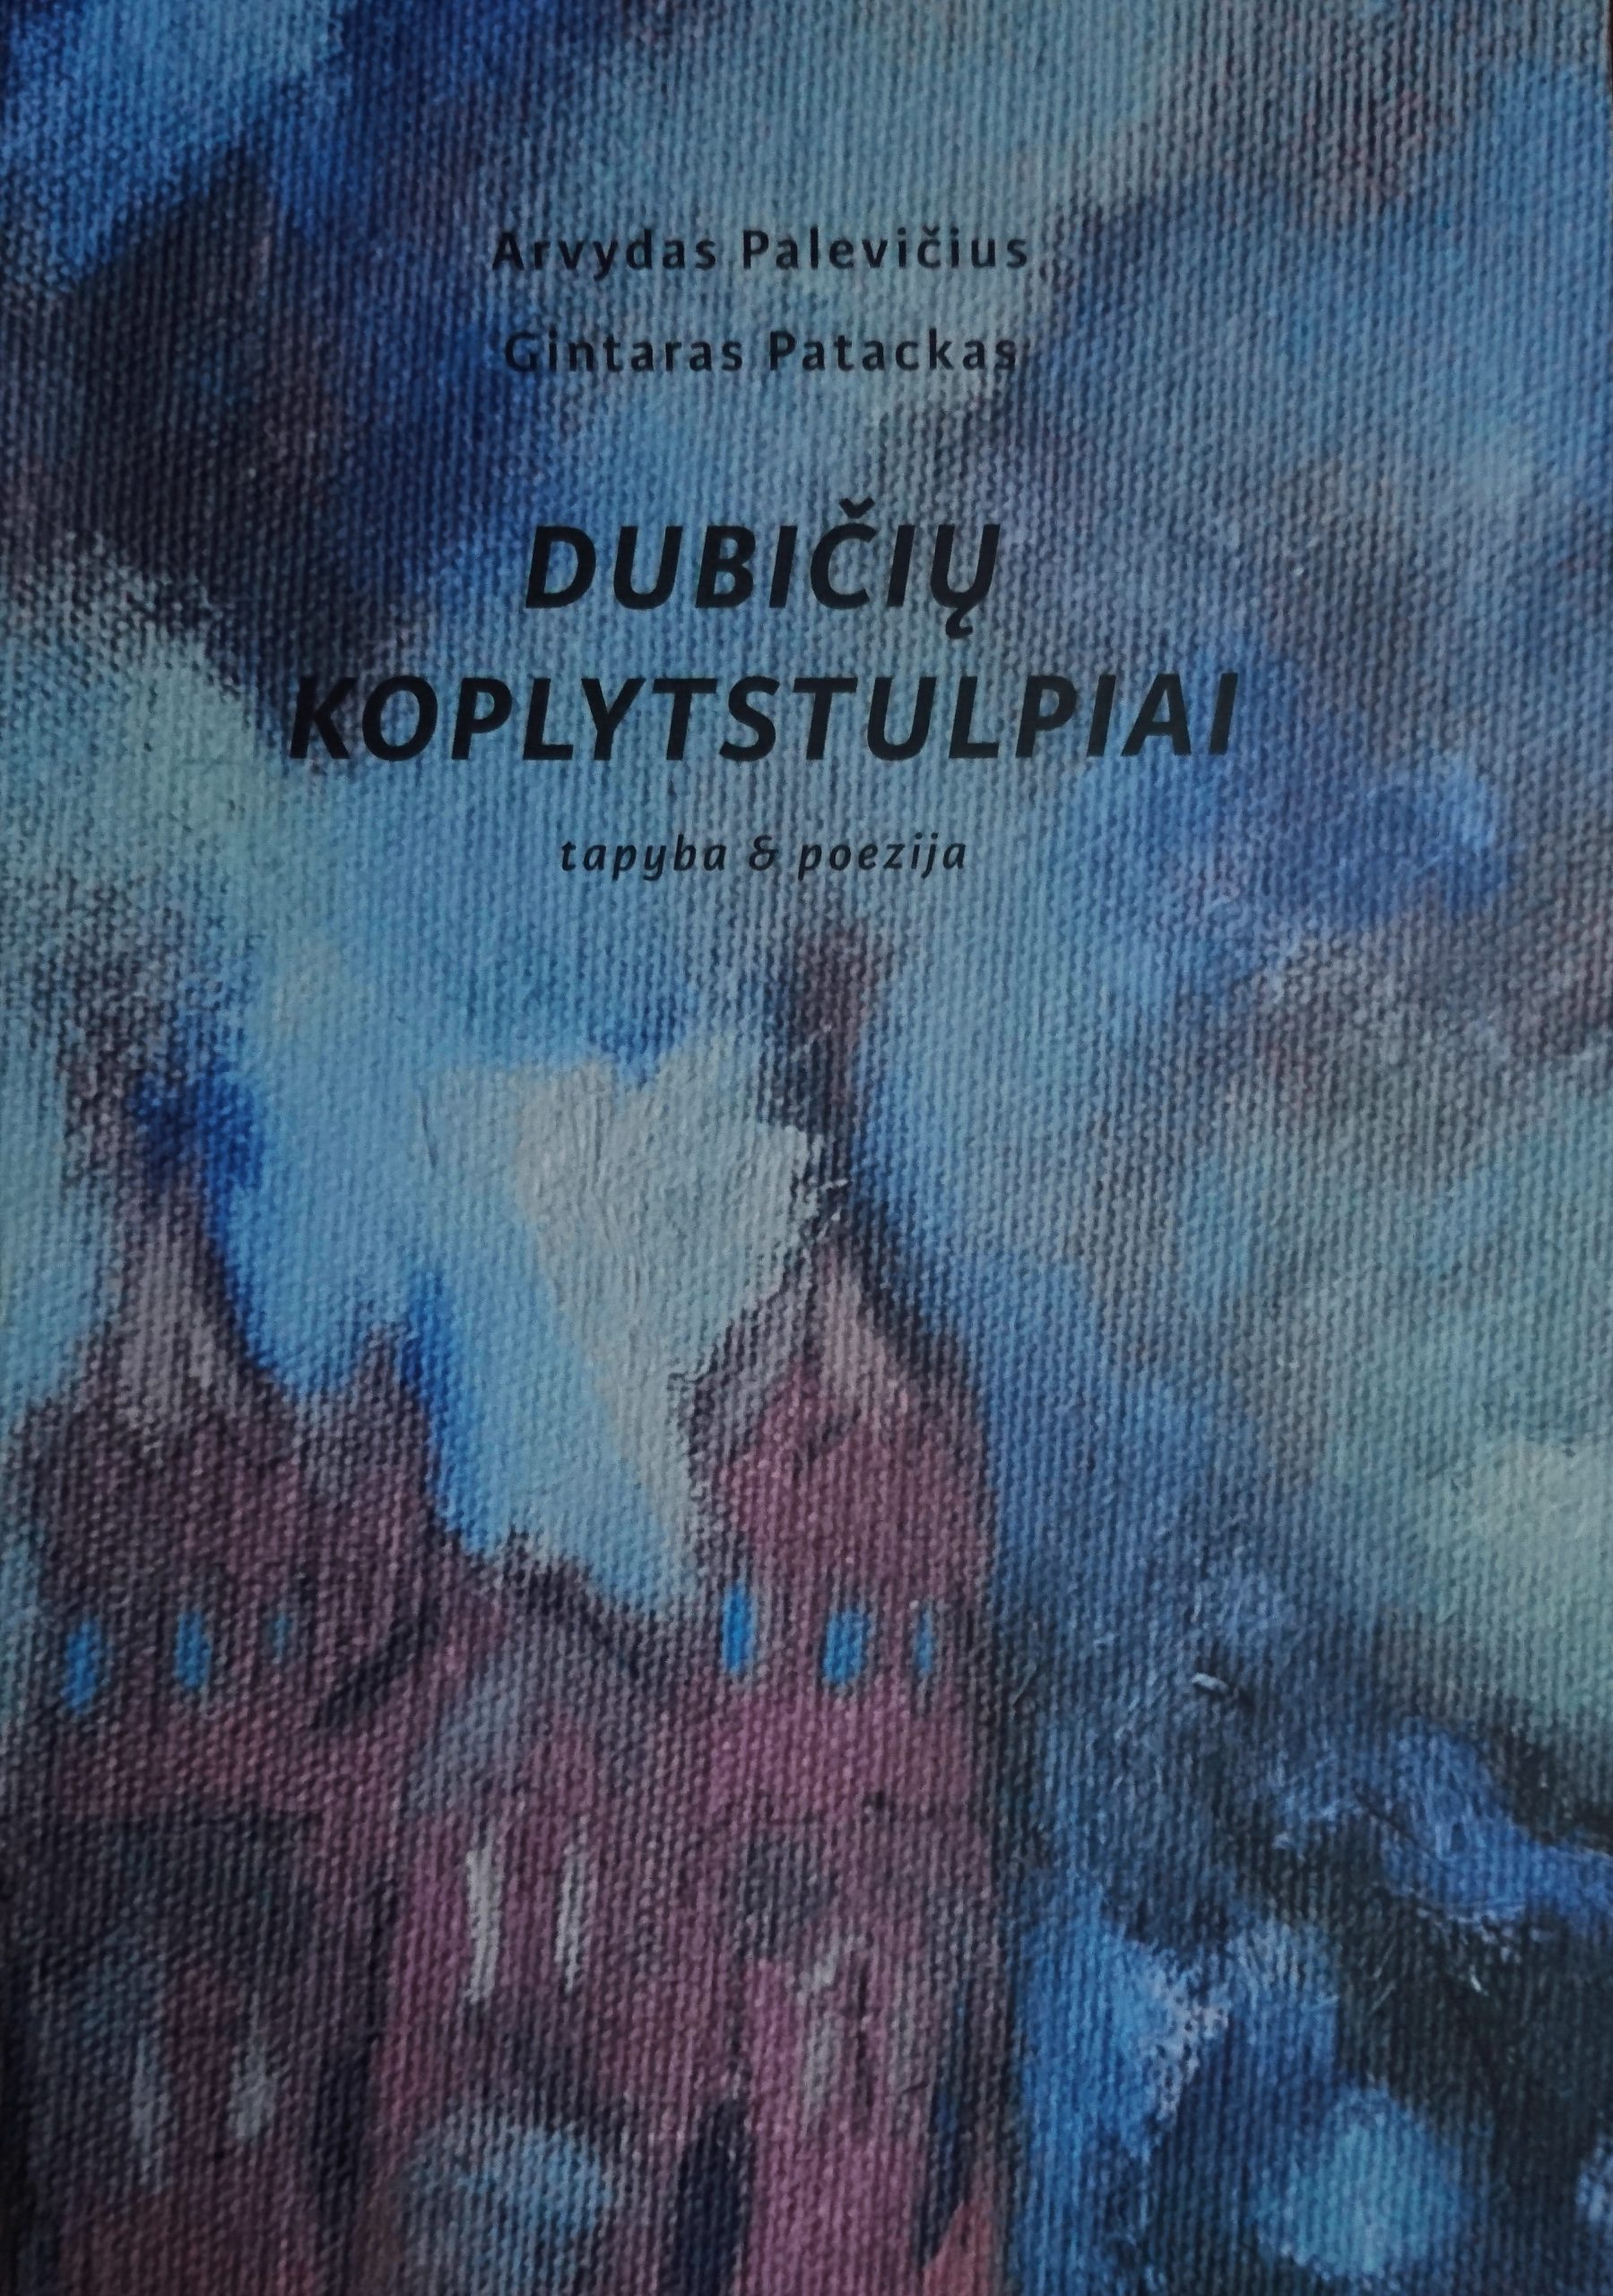 Gintaras Patackas, Arvydas Palevičius. „Dubičių koplytstulpiai: tapyba & poezija“ (Kaunas: MB Kitos spalvos, 2019)